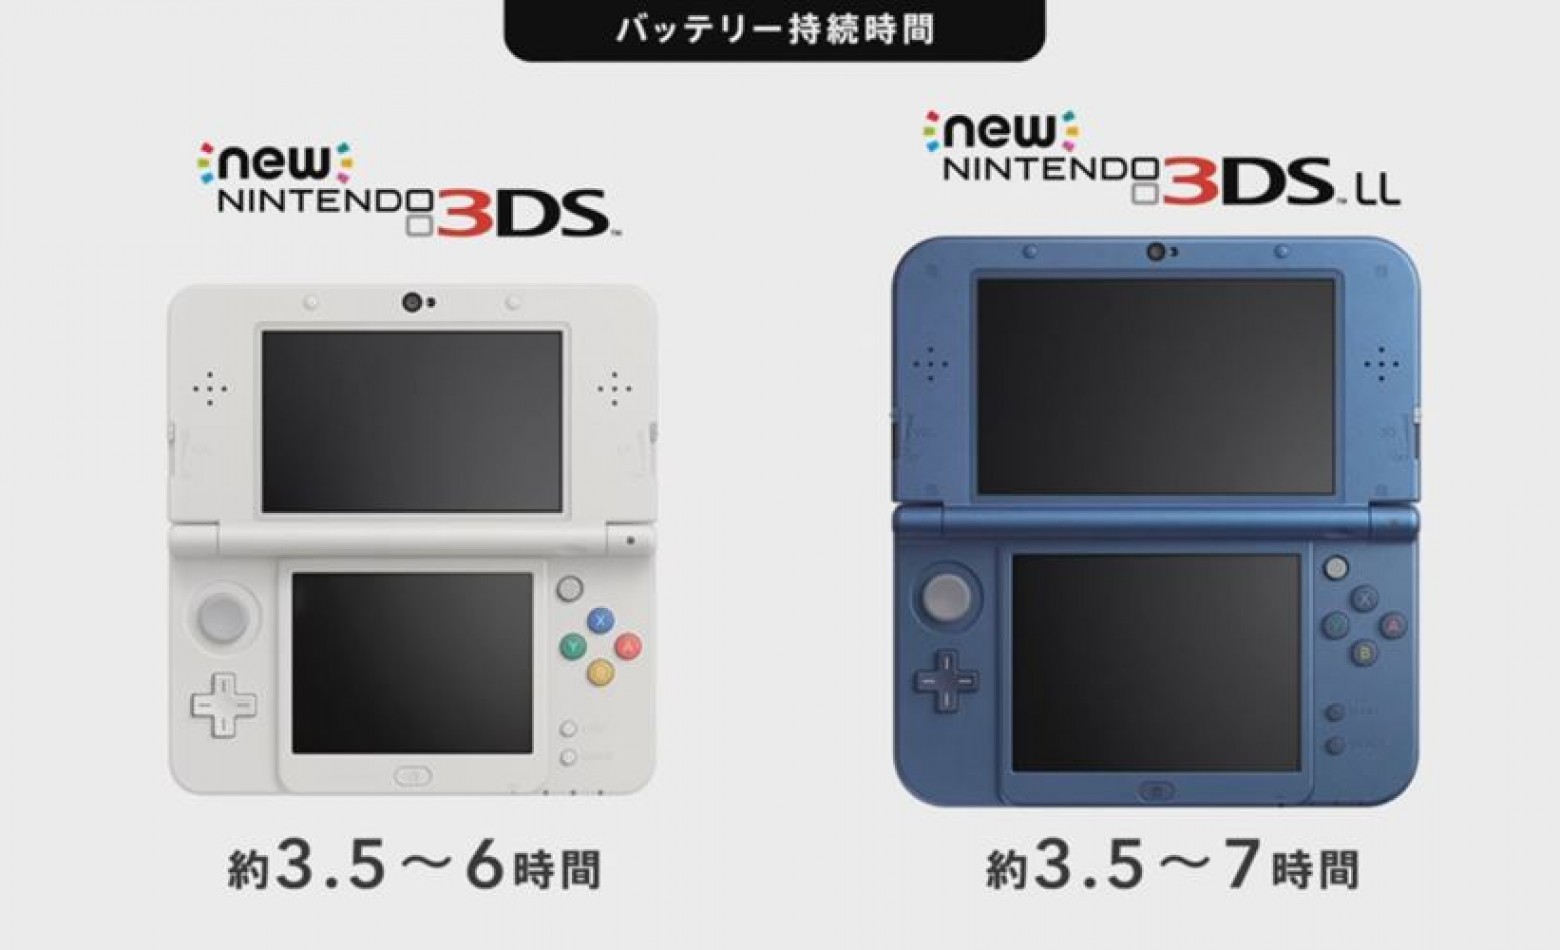 Nintendo divulga especificações do New 3DS